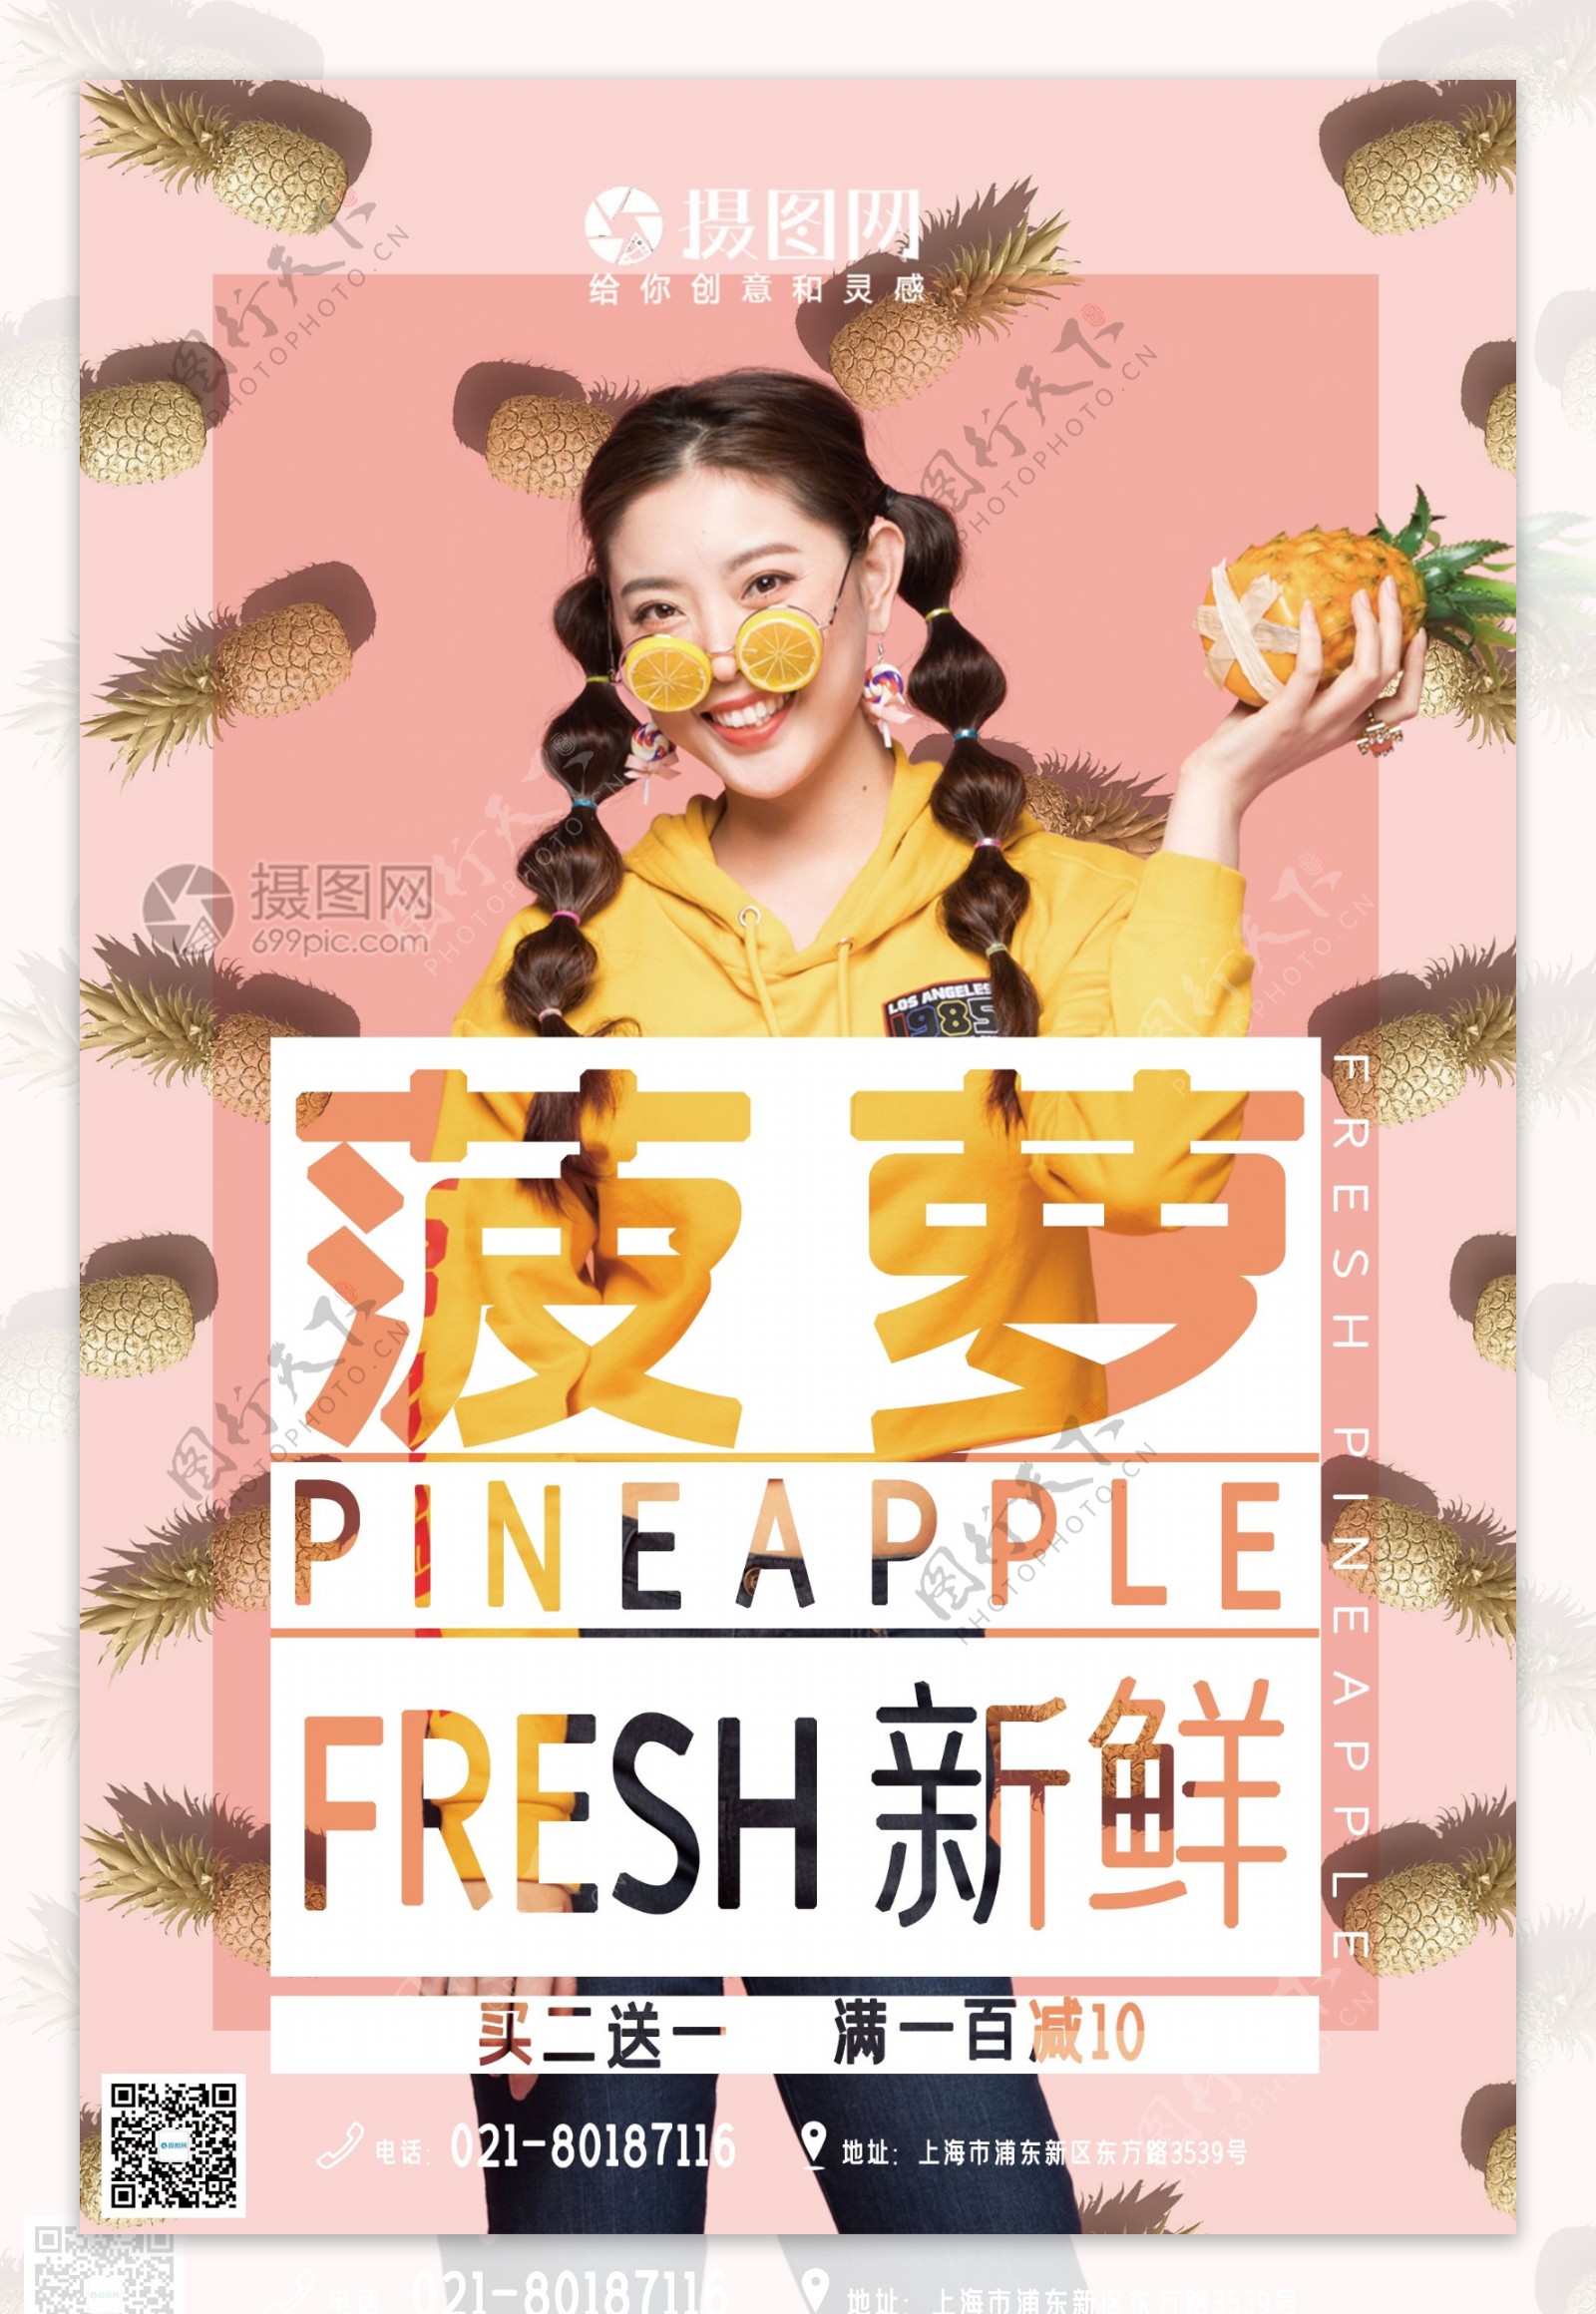 简约新鲜菠萝营养水果海报